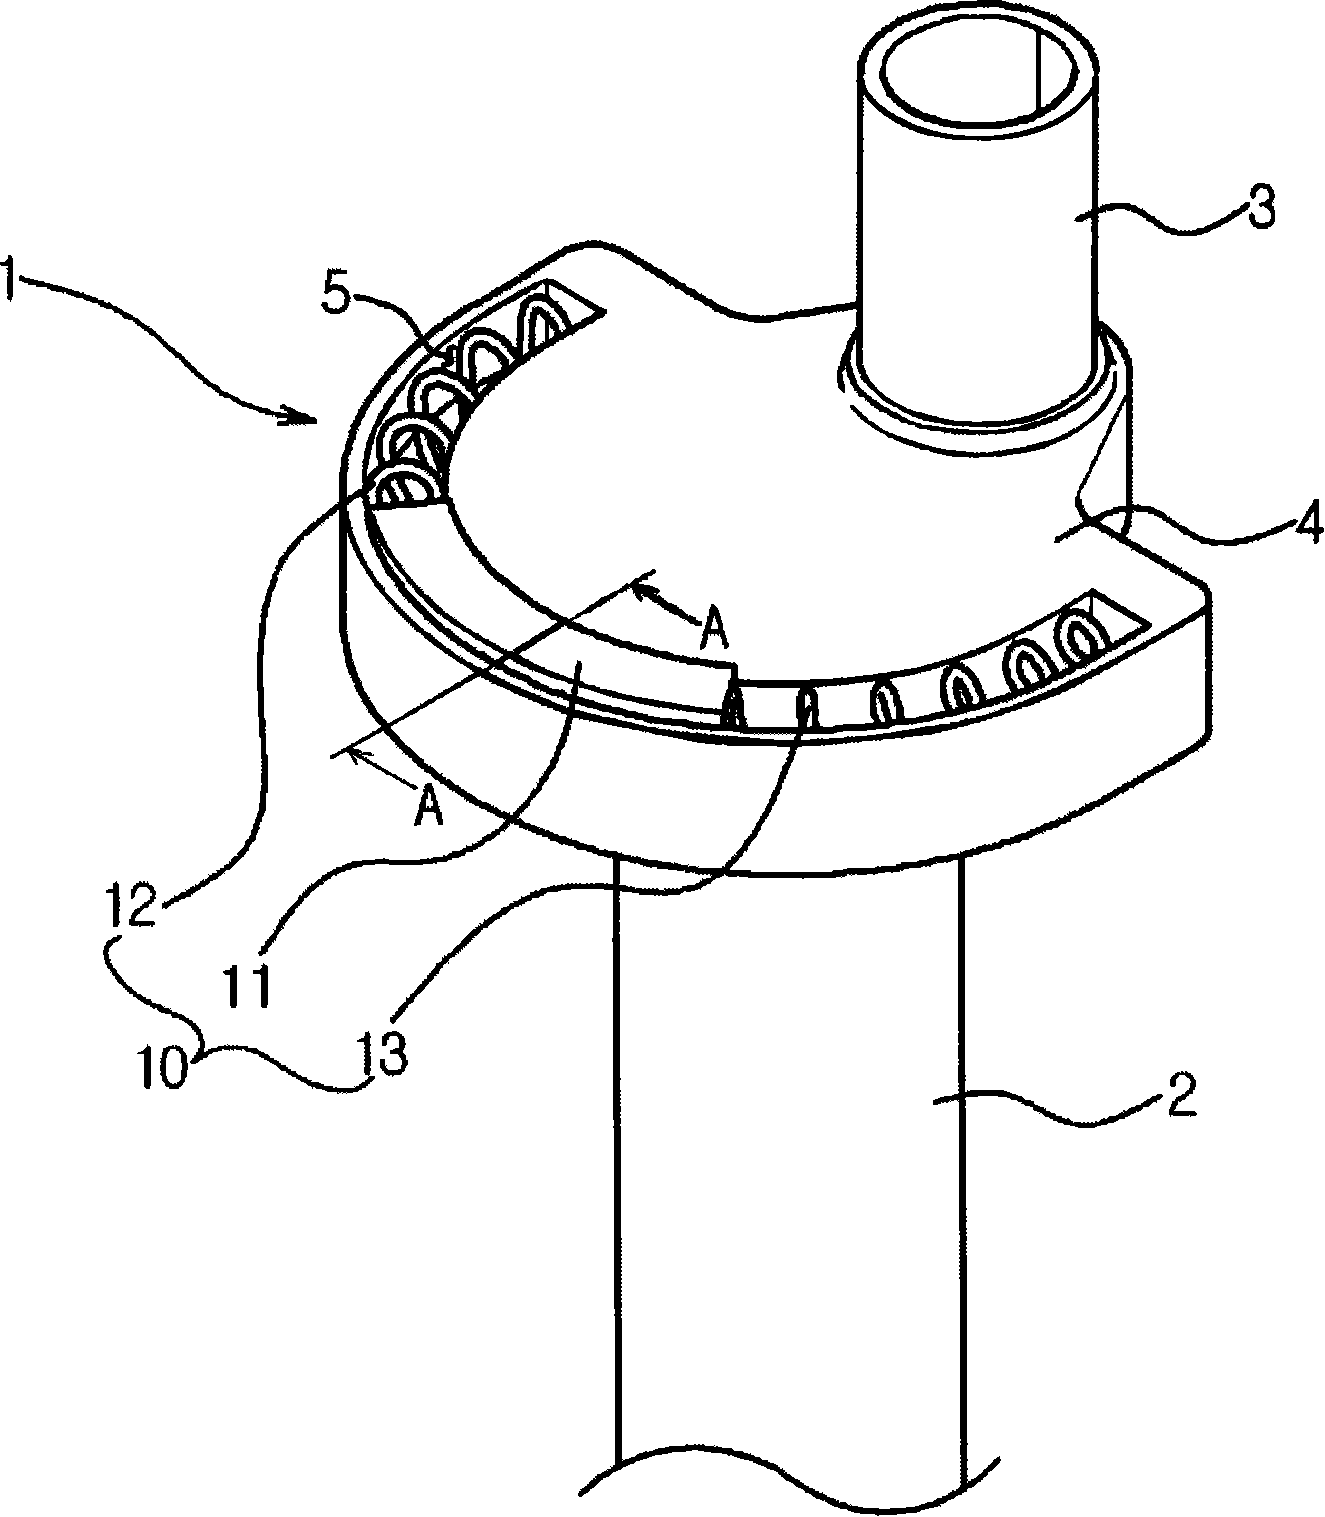 Crankshaft of reciprocal compressor